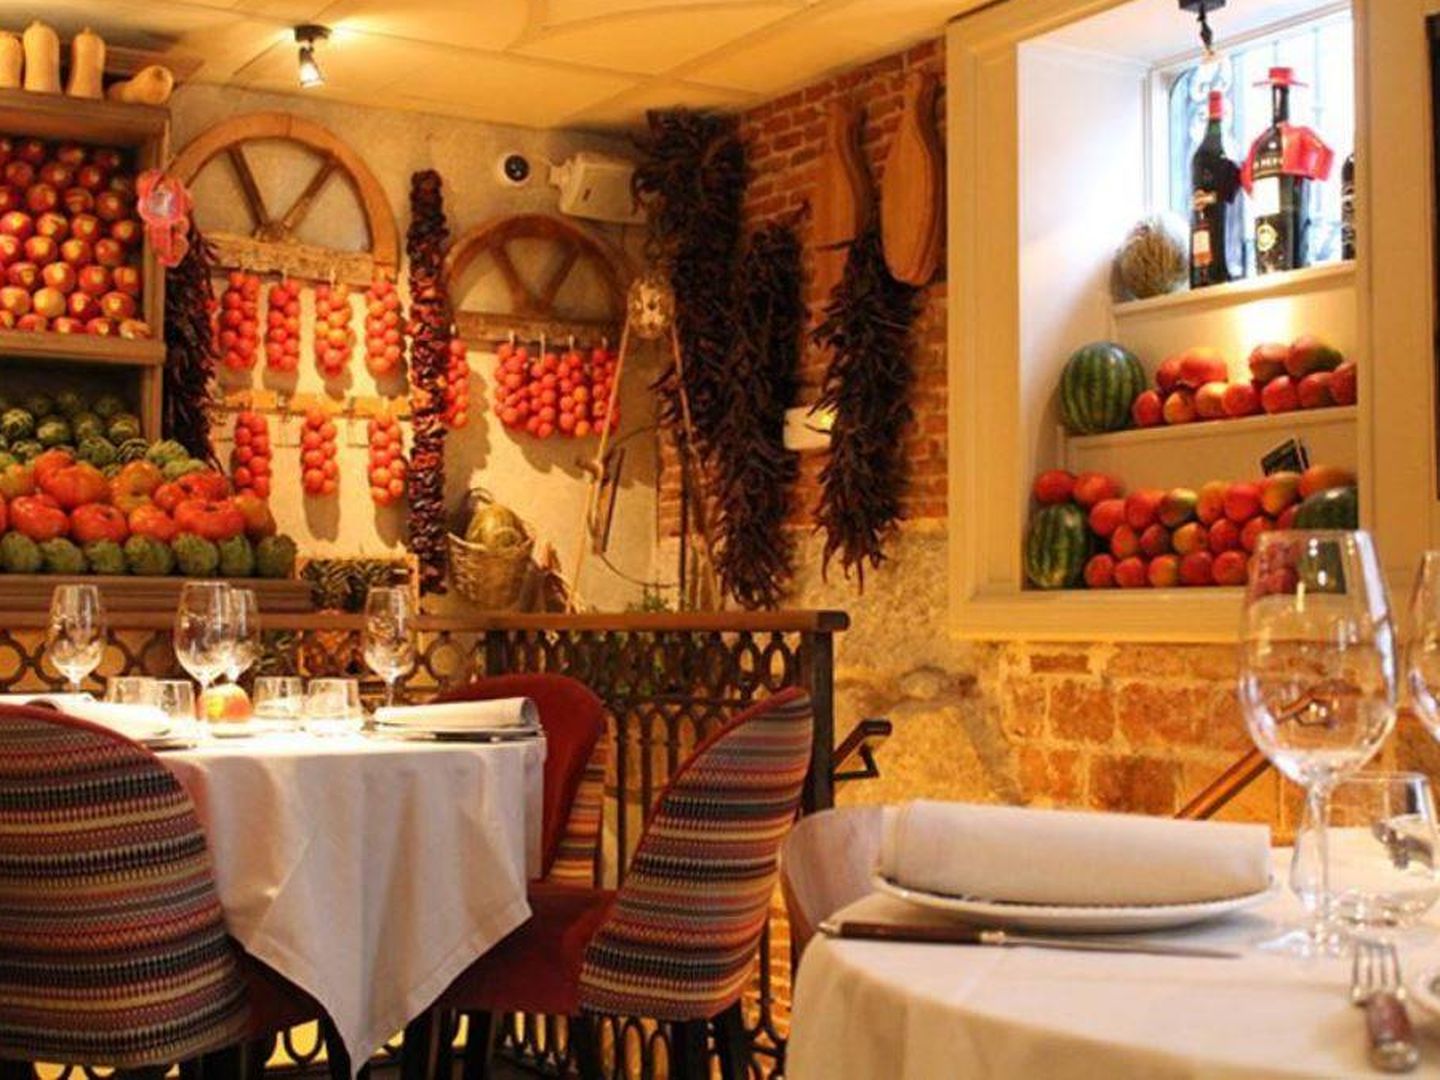  Imagen del Restaurante Quintín donde ha comido la infanta Pilar con sus hijos. (Instagram)